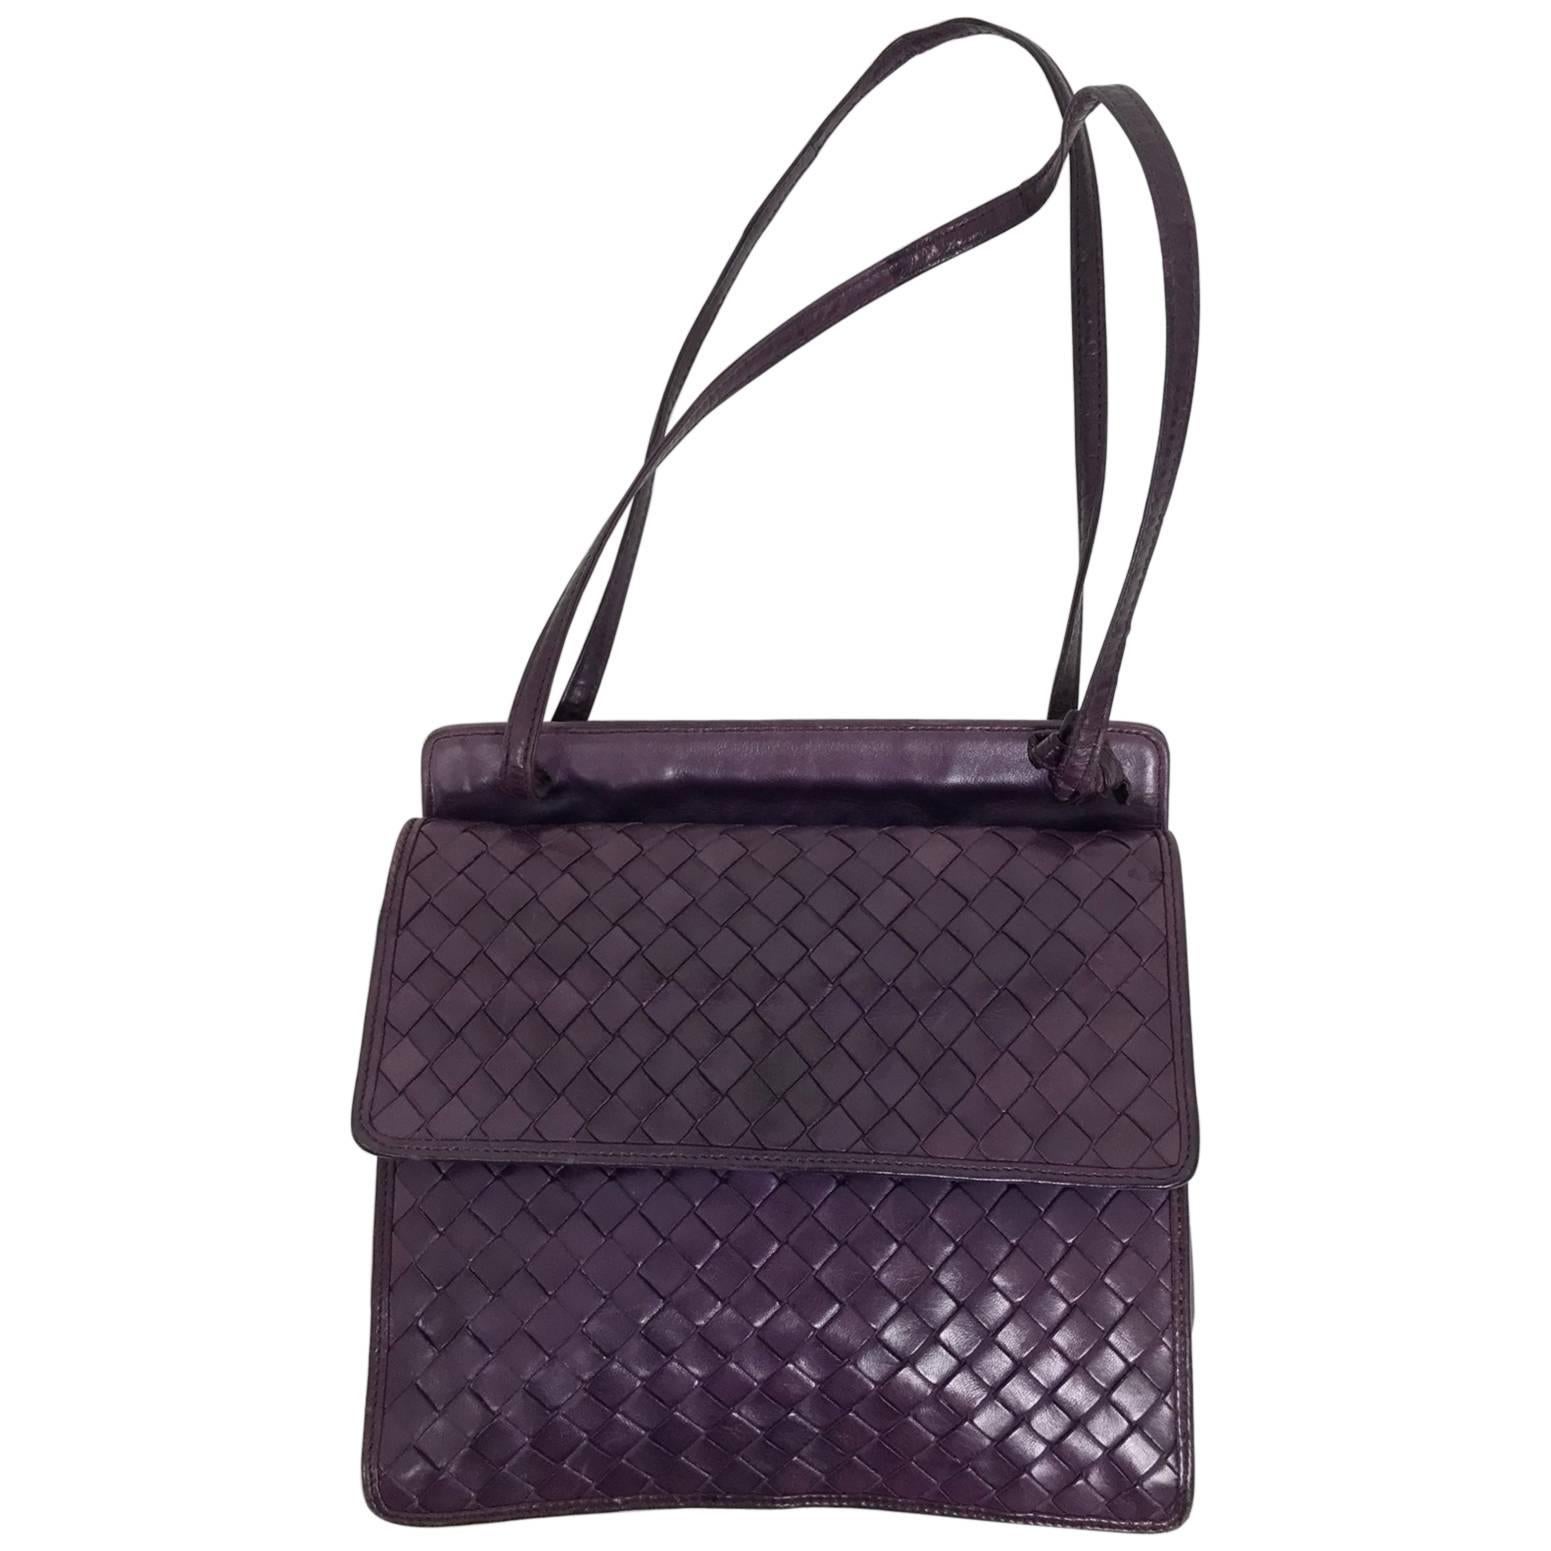 Bottega Veneta vintage 1980s intrecciato soft purple leather handbag 1980s